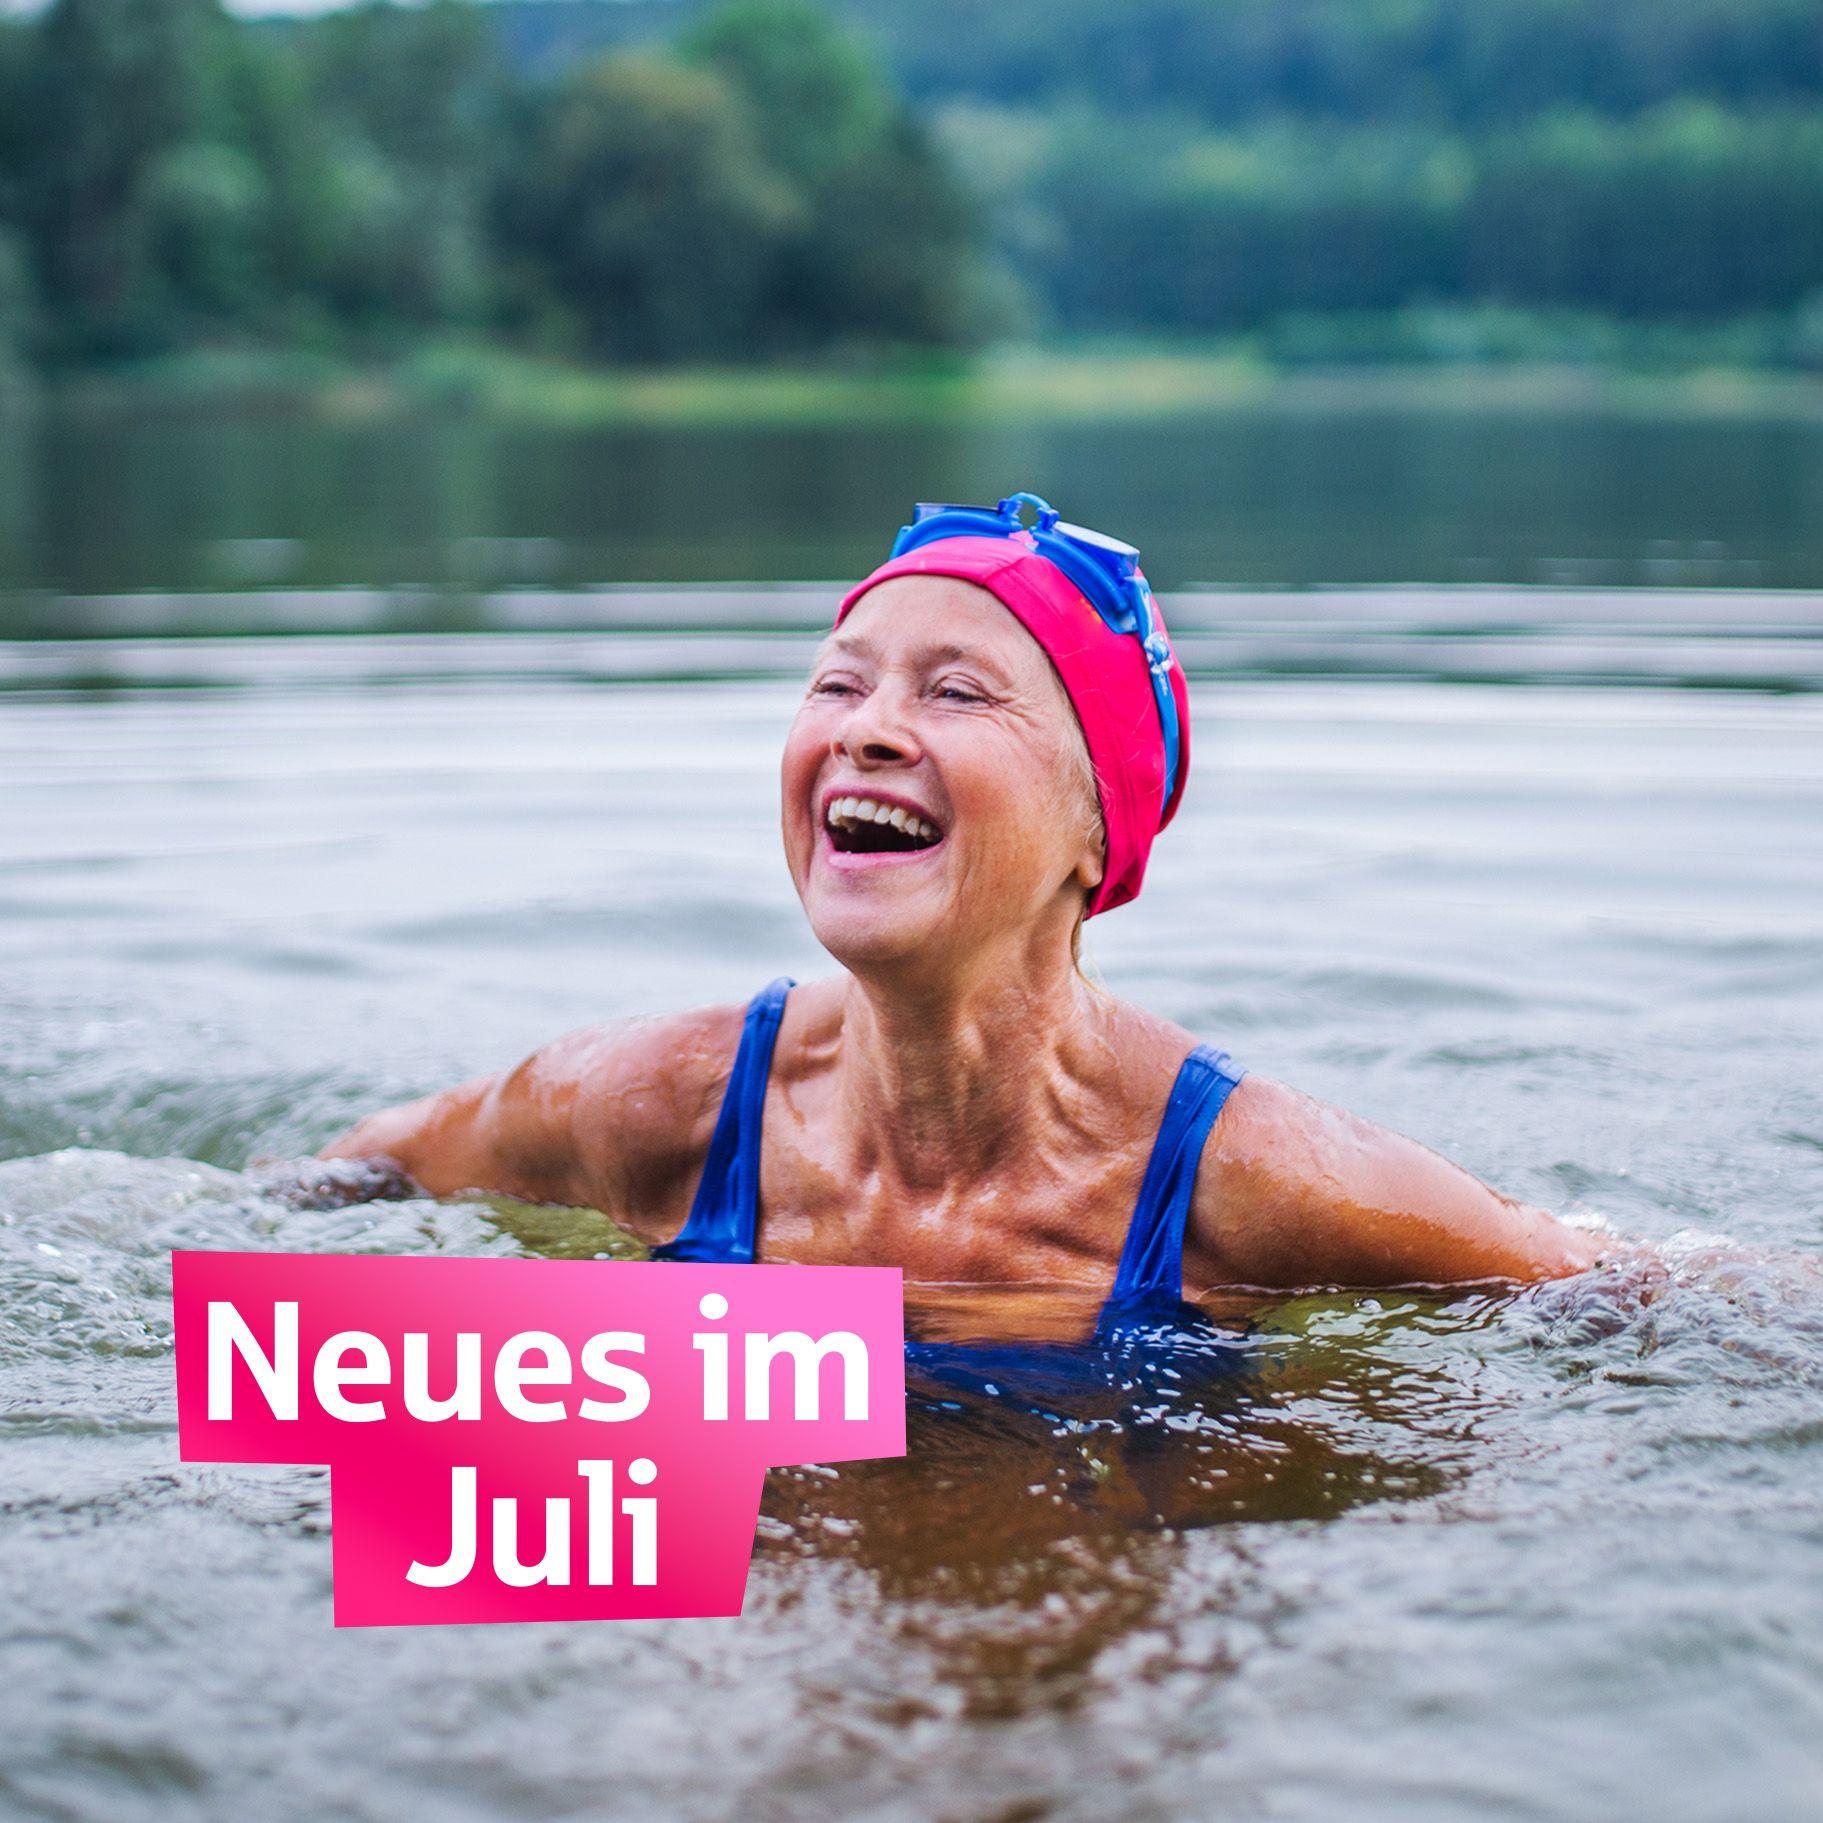 Neues im Juli eine lachende Seniorin mit Badekappe schwimmt in einem See